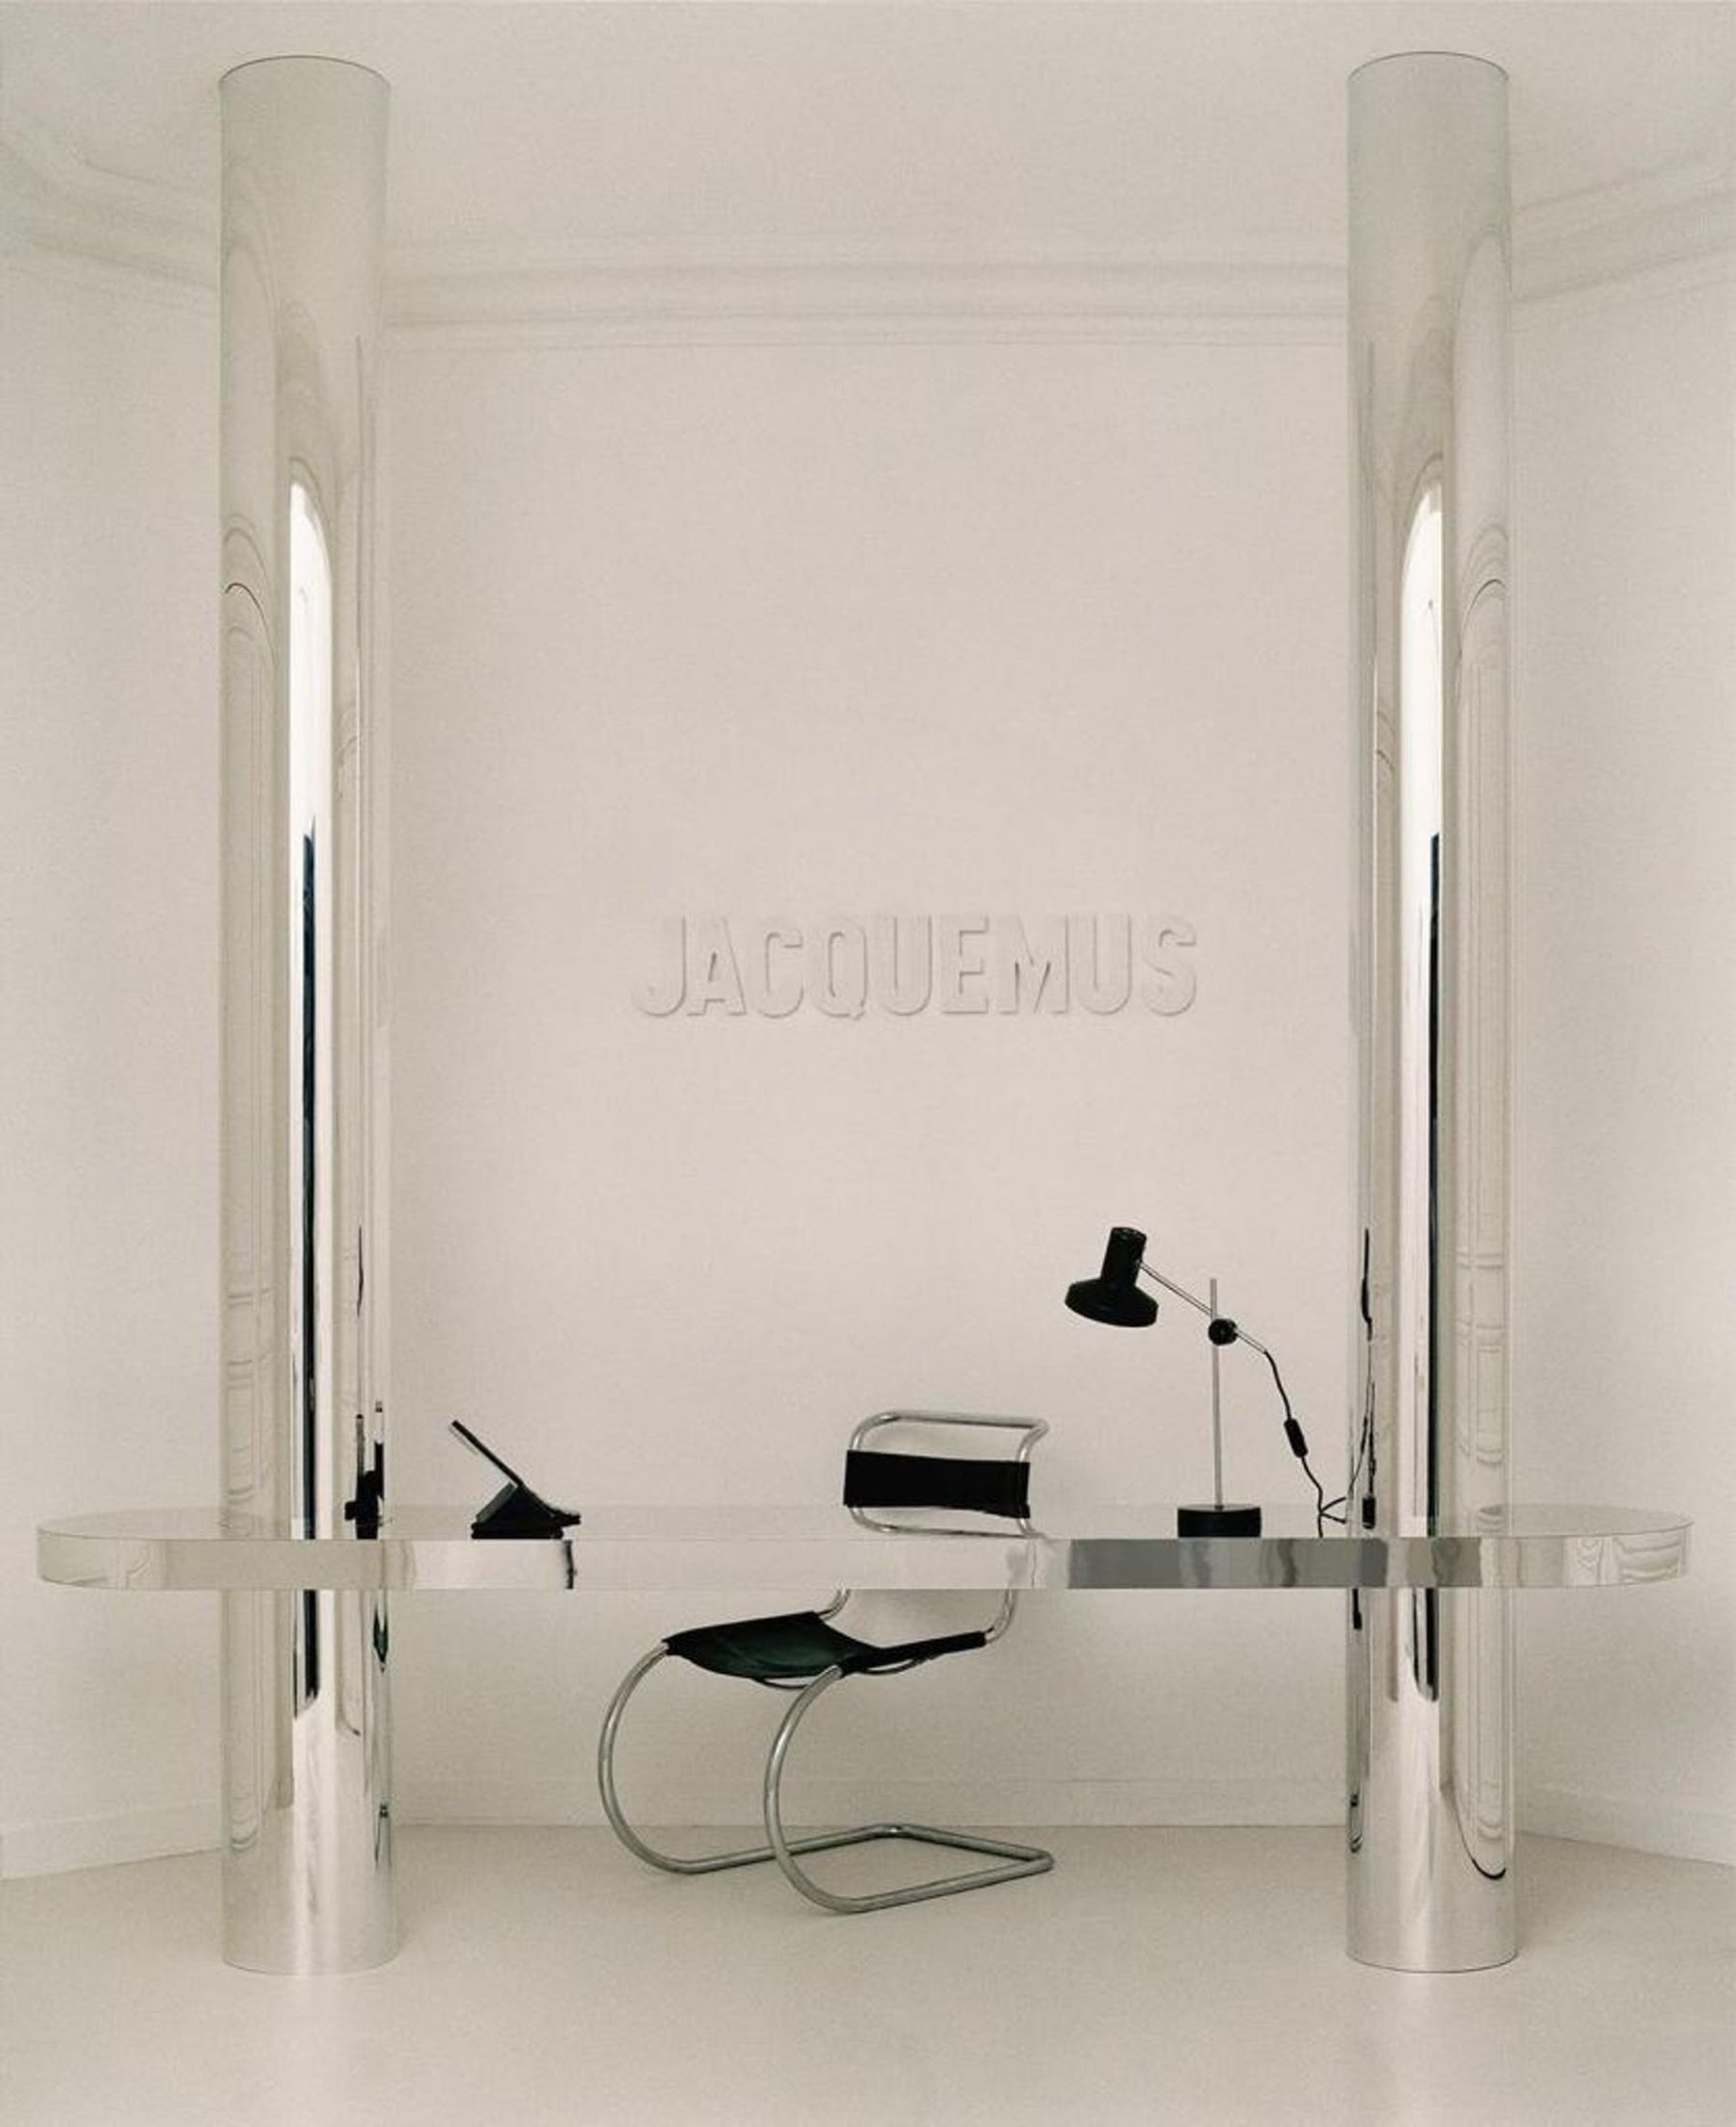 Jacquemus Building in Paris photographed by Julien T. Hamon